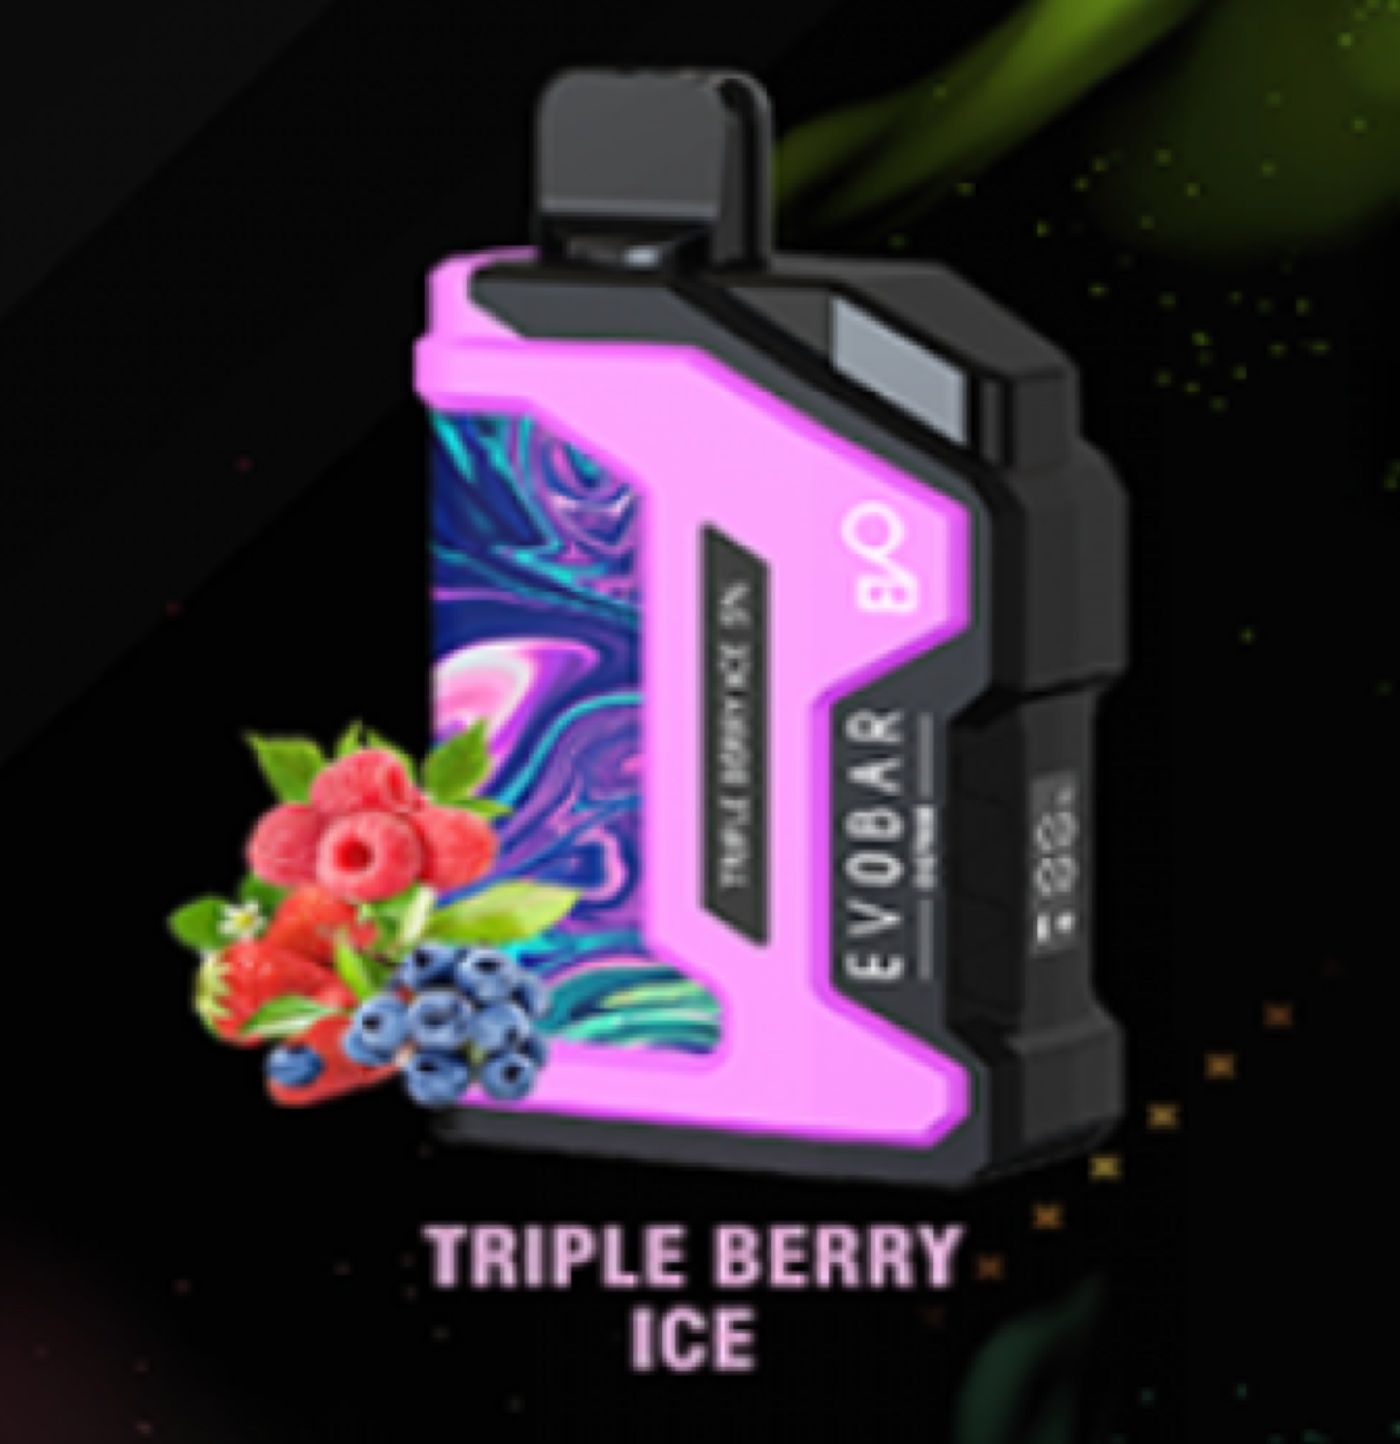 Evobar OG7000 triple berry ice